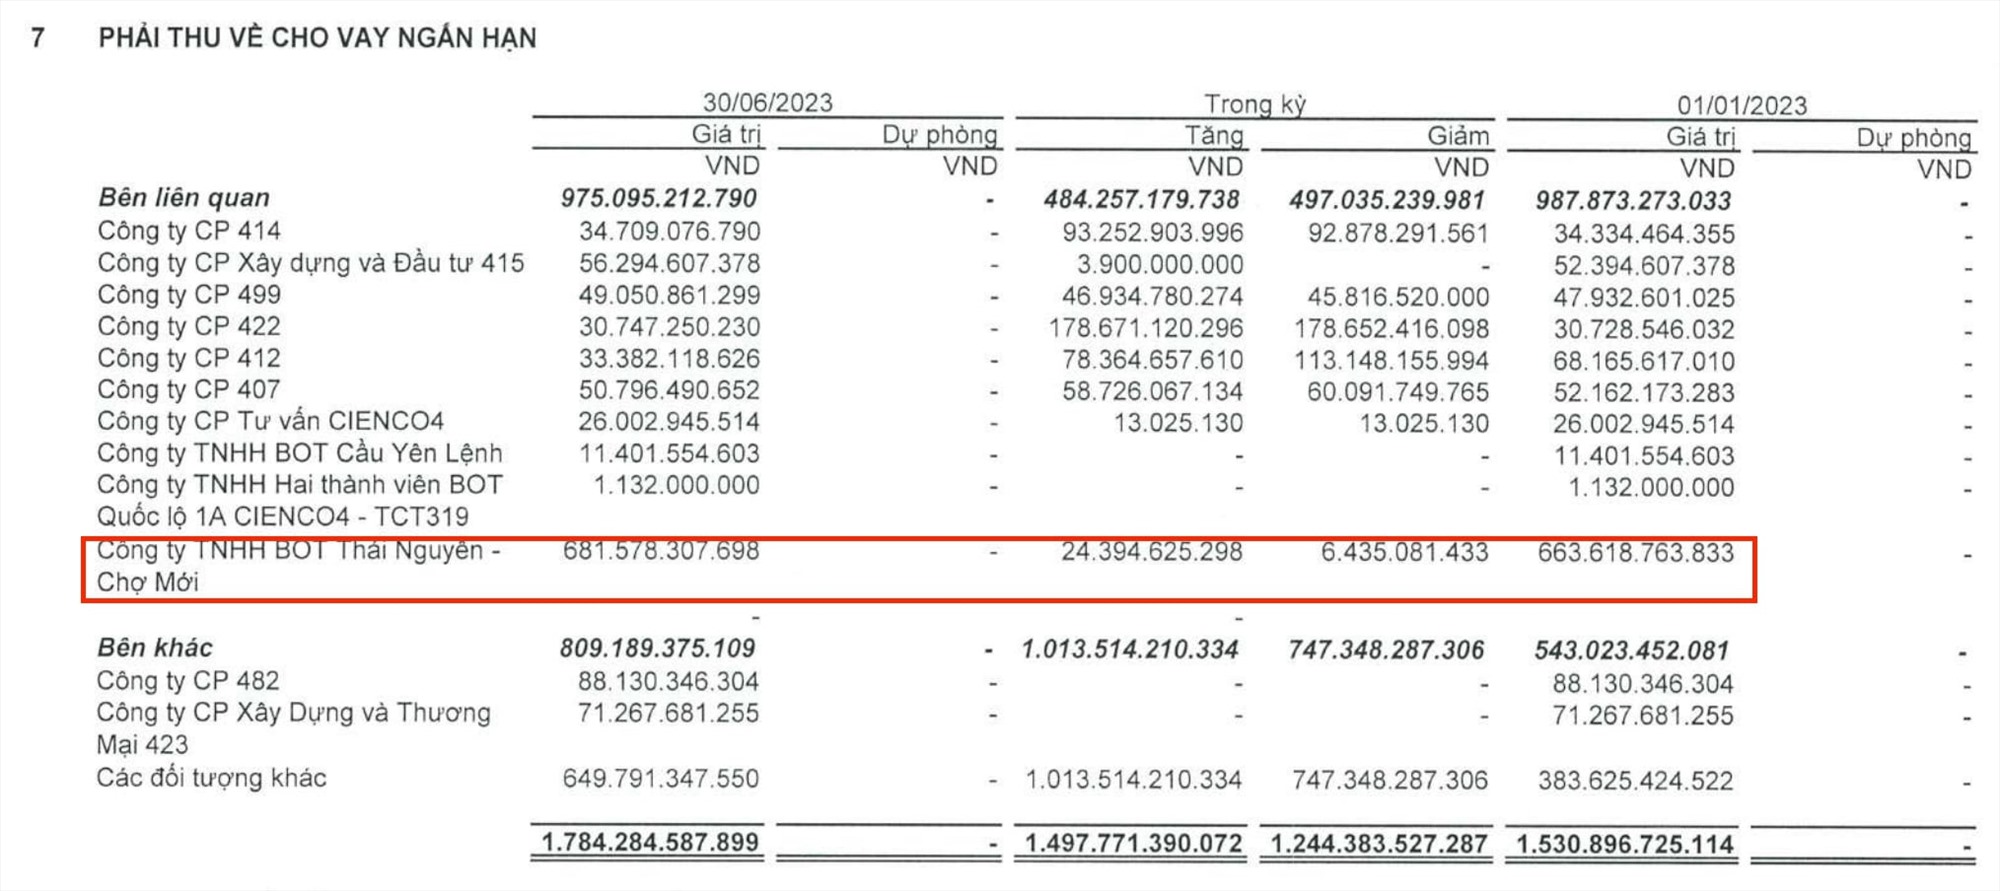 CIENCO4 dành hơn 1.700 tỉ đồng cho vay ngắn hạn. Trong đó, riêng Công ty TNHH BOT Thái Nguyên Chợ Mới vay gần 682 tỉ đồng. Ảnh: Chup màn hình.